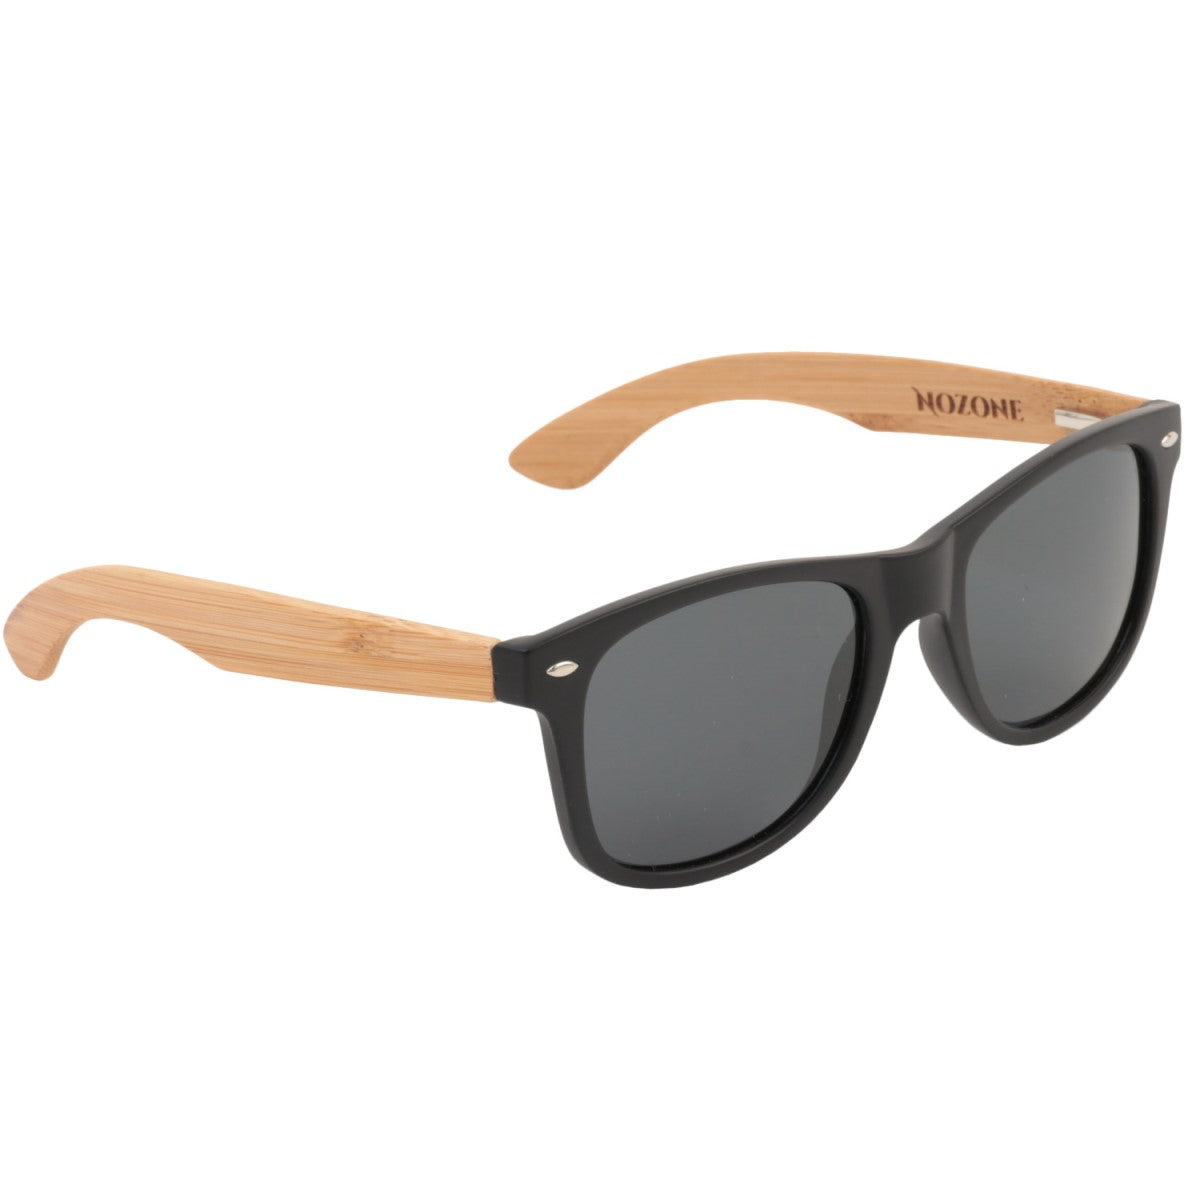 Nozone bamboo sunglasses - UV400 polarized glare-resistant grey lenses - protective travel case #style_Grey Lenses w/Protective Case